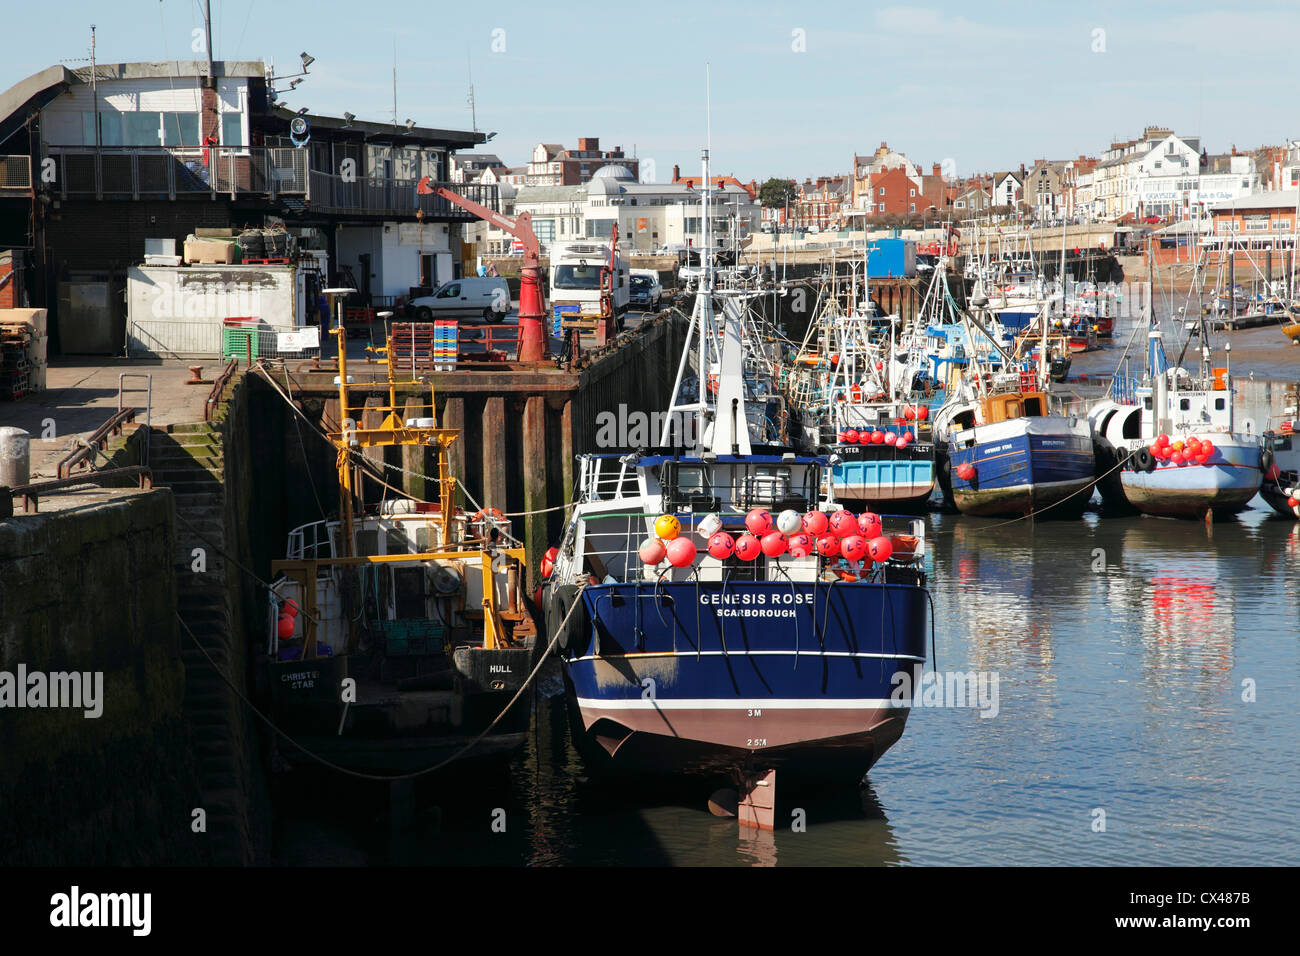 Les chalutiers de pêche dans le port de Bridlington, East Riding, Angleterre, Royaume-Uni Banque D'Images